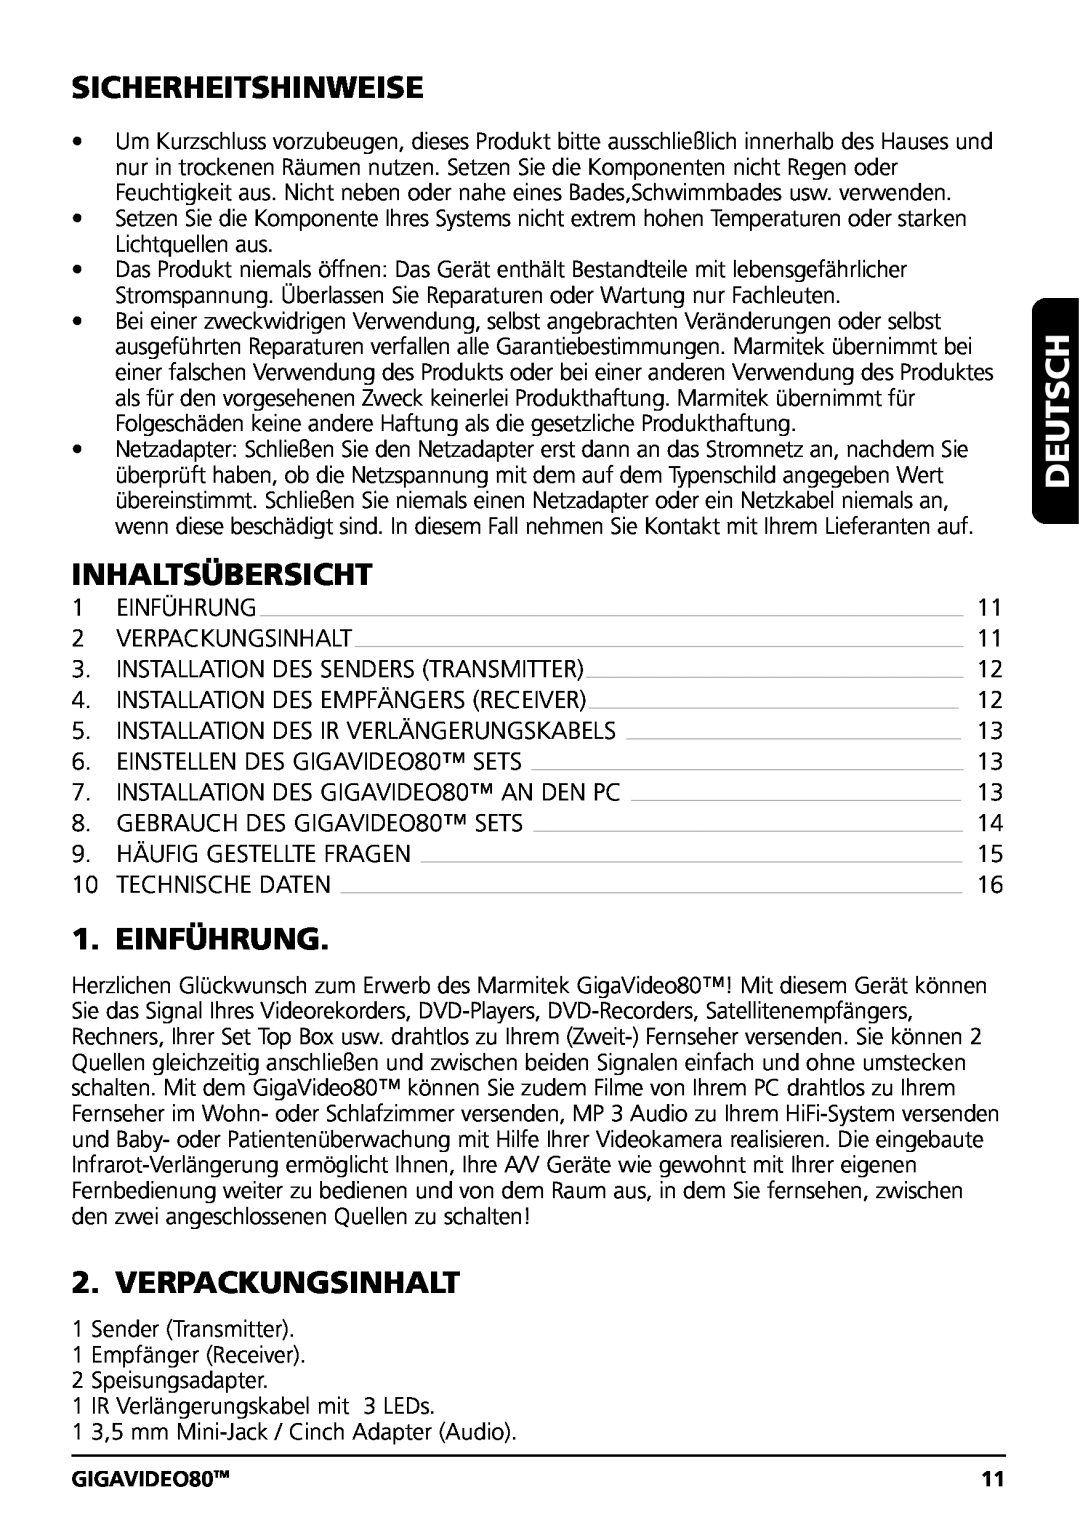 Marmitek user manual Deutsch, Sicherheitshinweise, Inhaltsübersicht, Einführung, Verpackungsinhalt, GIGAVIDEO80TM 